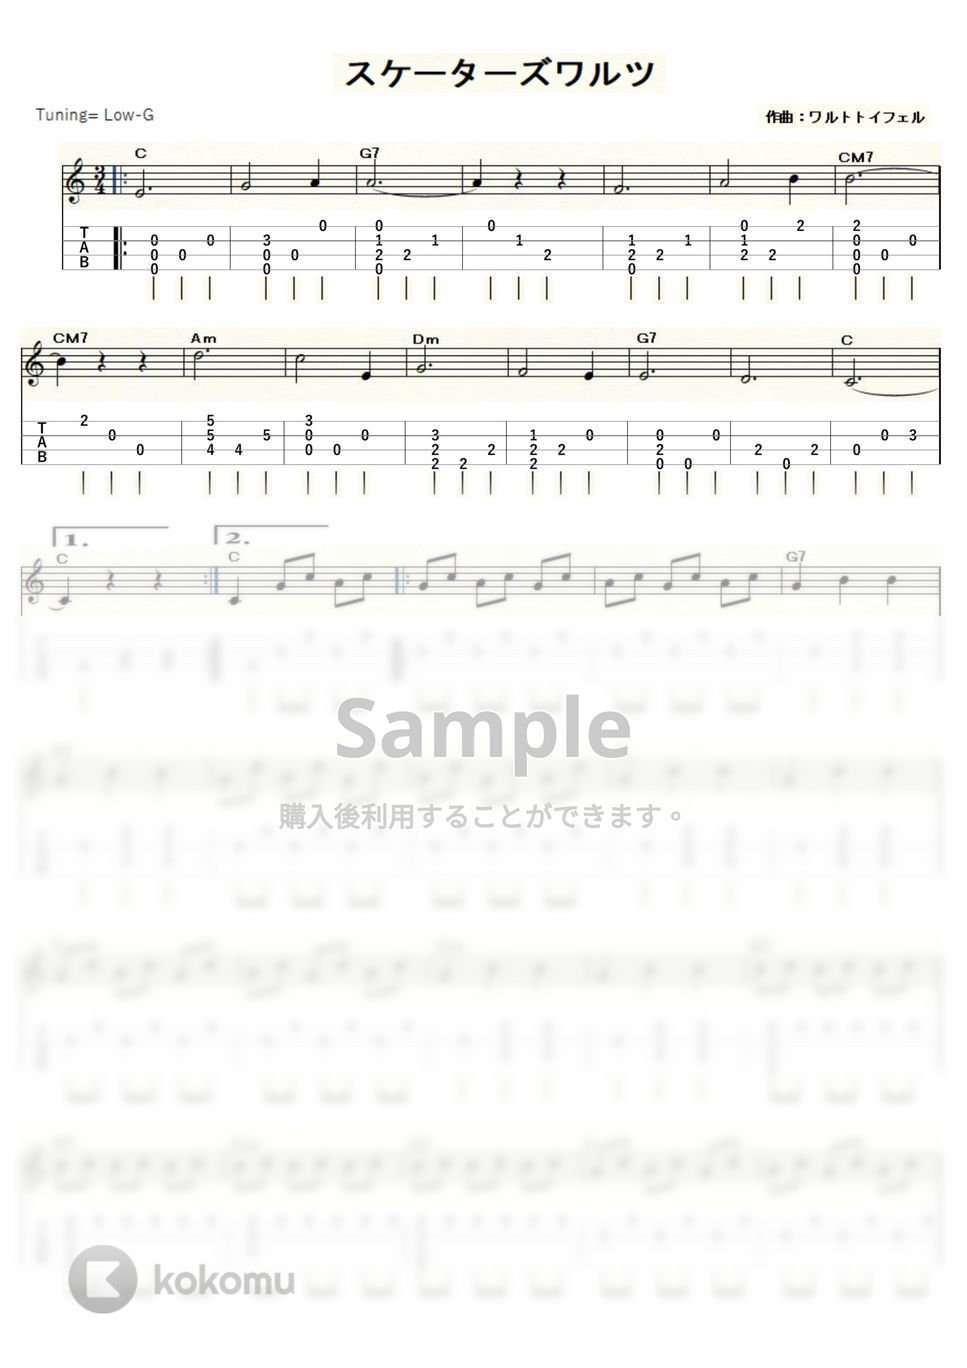 ワルトトイフェル - スケーターズワルツ (ｳｸﾚﾚｿﾛ / Low-G / 初級～中級) by ukulelepapa